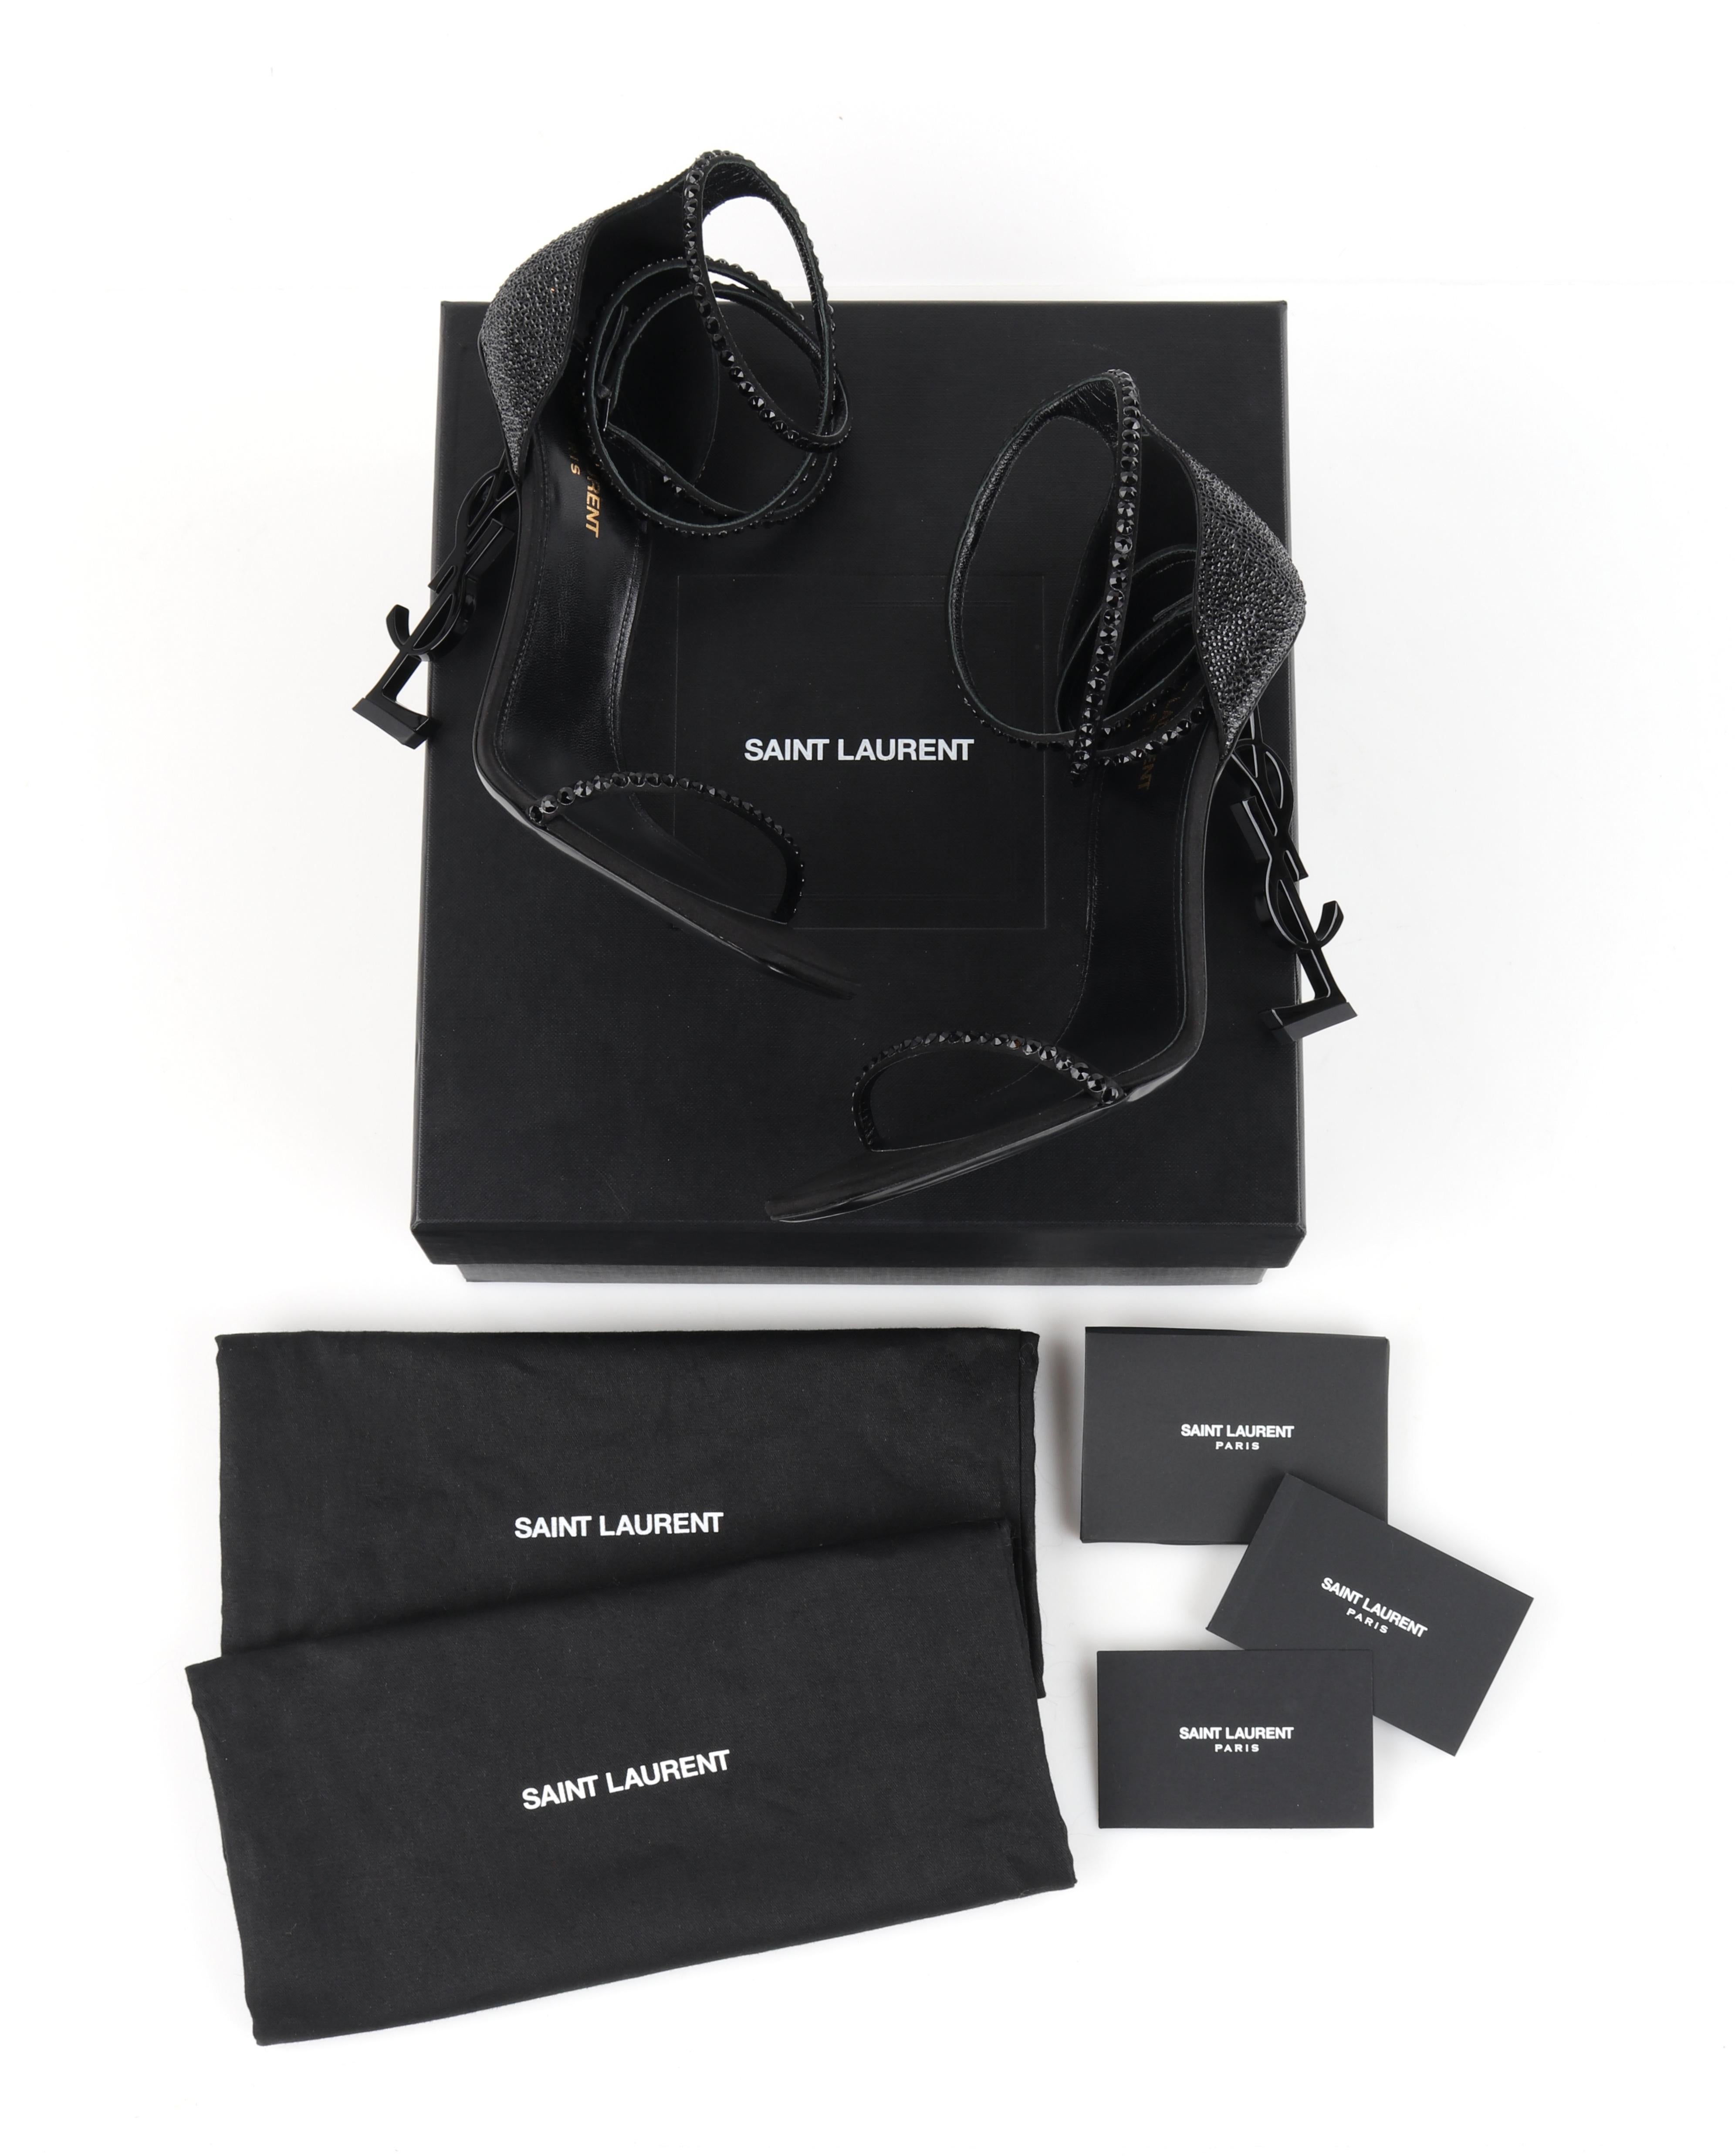 YVES SAINT LAURENT c.2017 „Opyum“ Sandalen mit Absatz aus schwarzem Swarovski-Kristall und YSL-Logo

Marke / Hersteller: Saint Laurent
CIRCA: 2017 